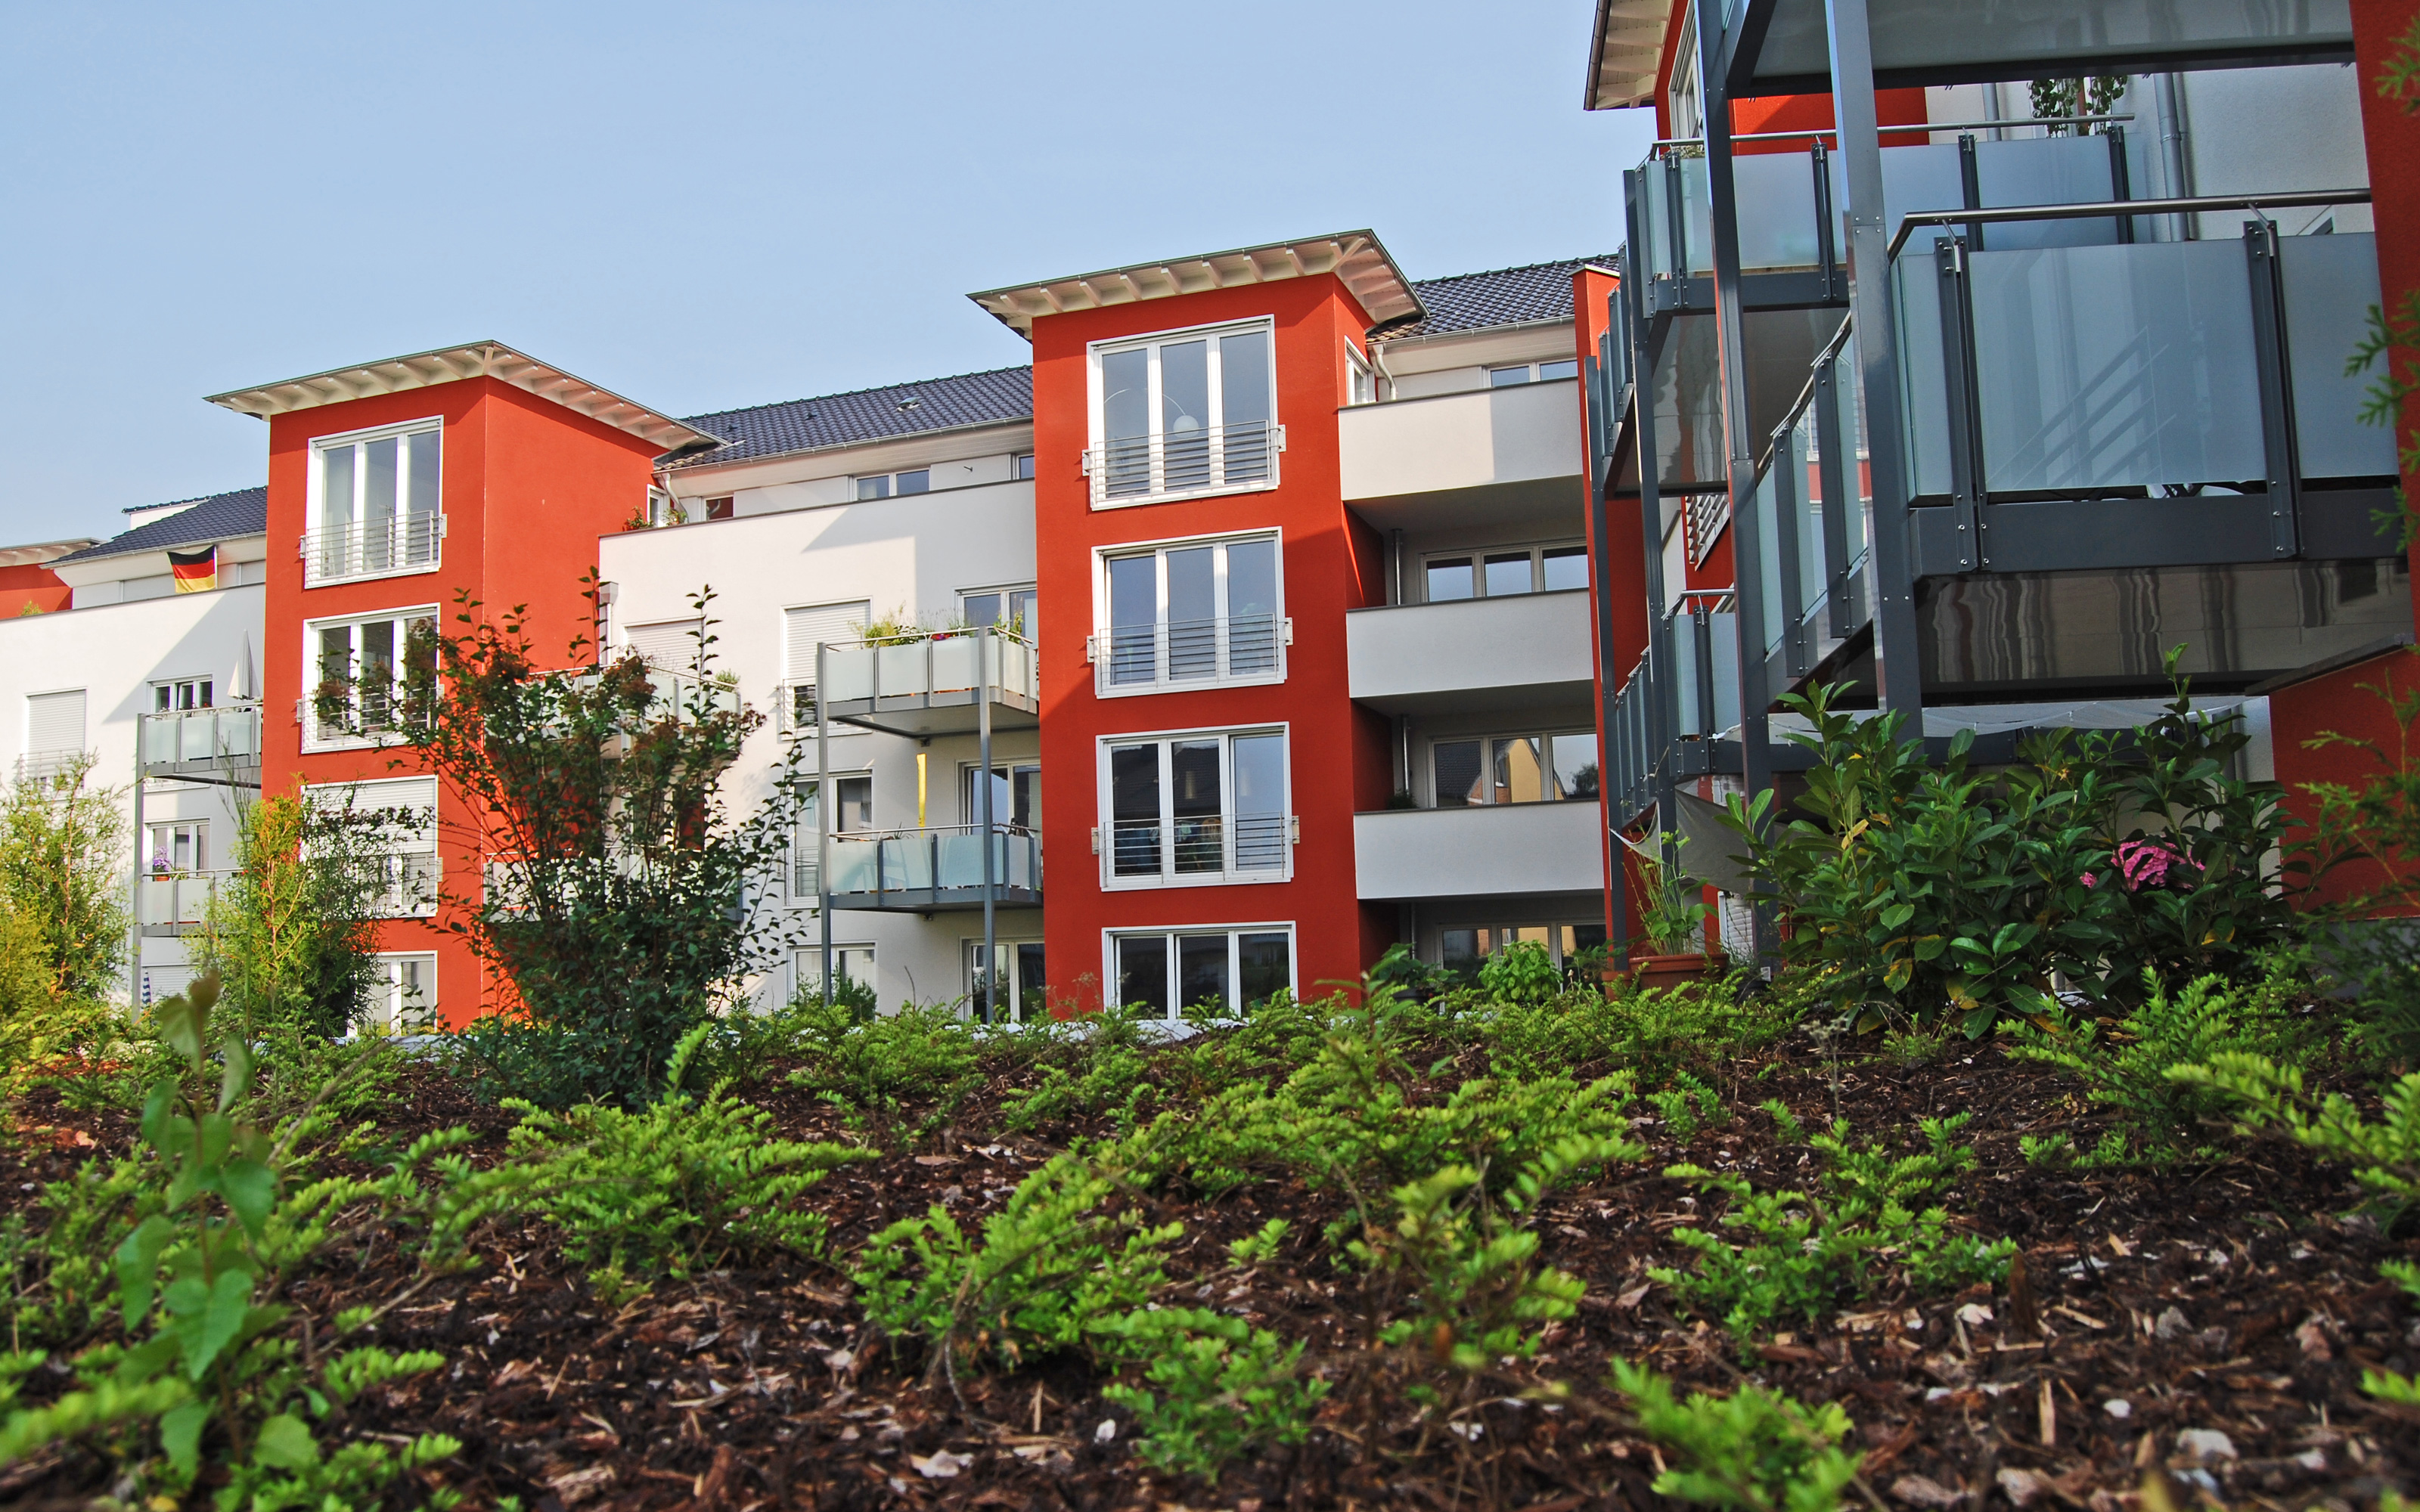 Wohnanlage mit rot-weißen Häusern vor einer Substratanhügelung mit Pflanzen